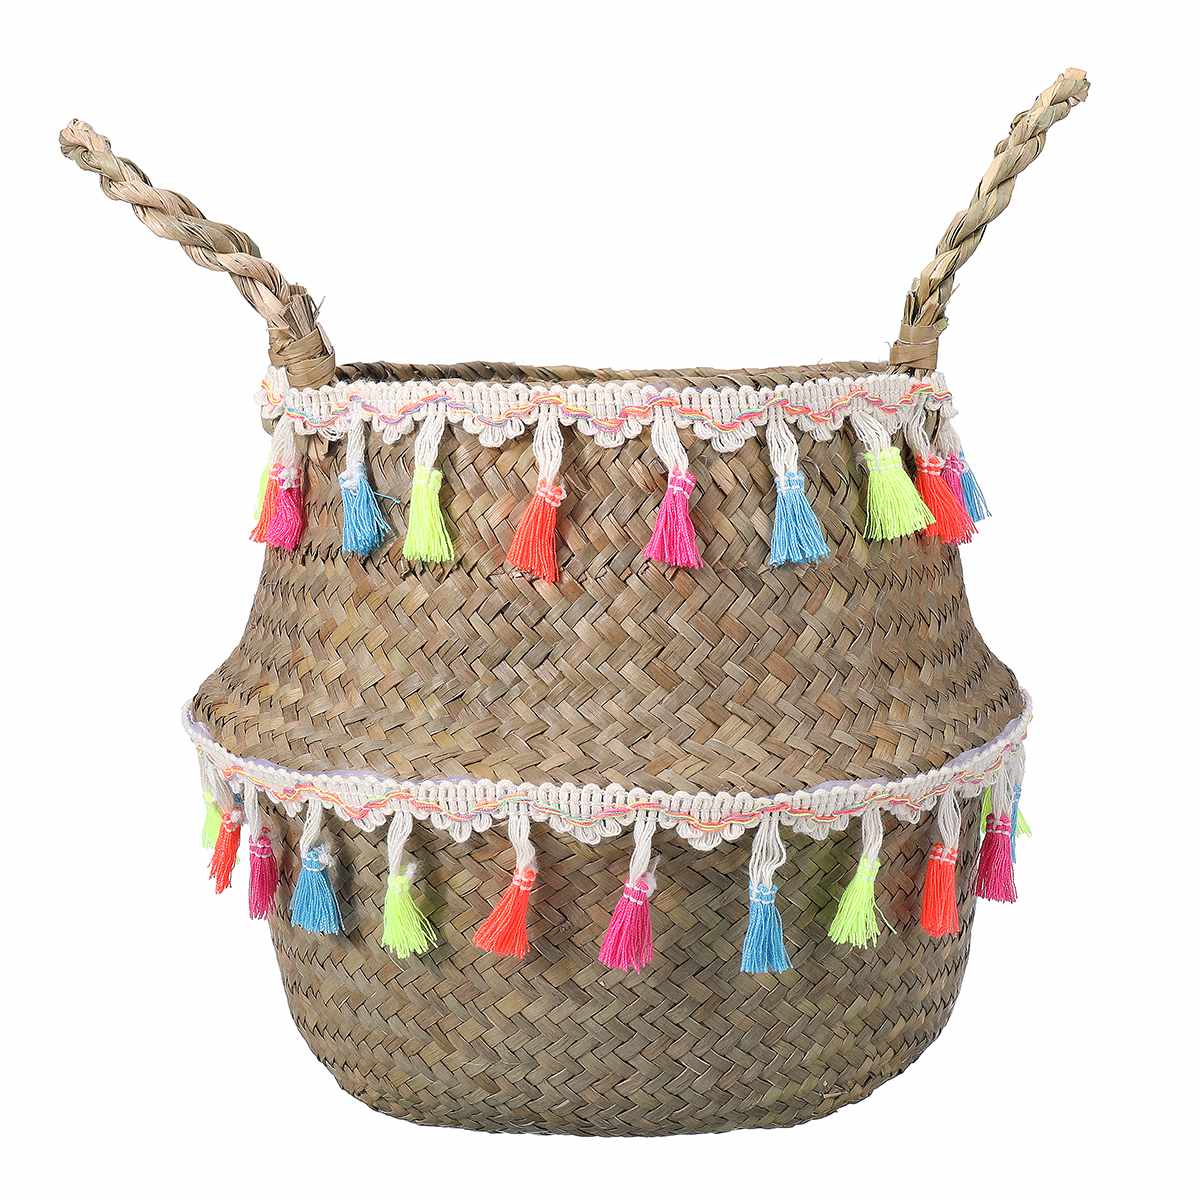 Handmade Seagrass Storage Baskets